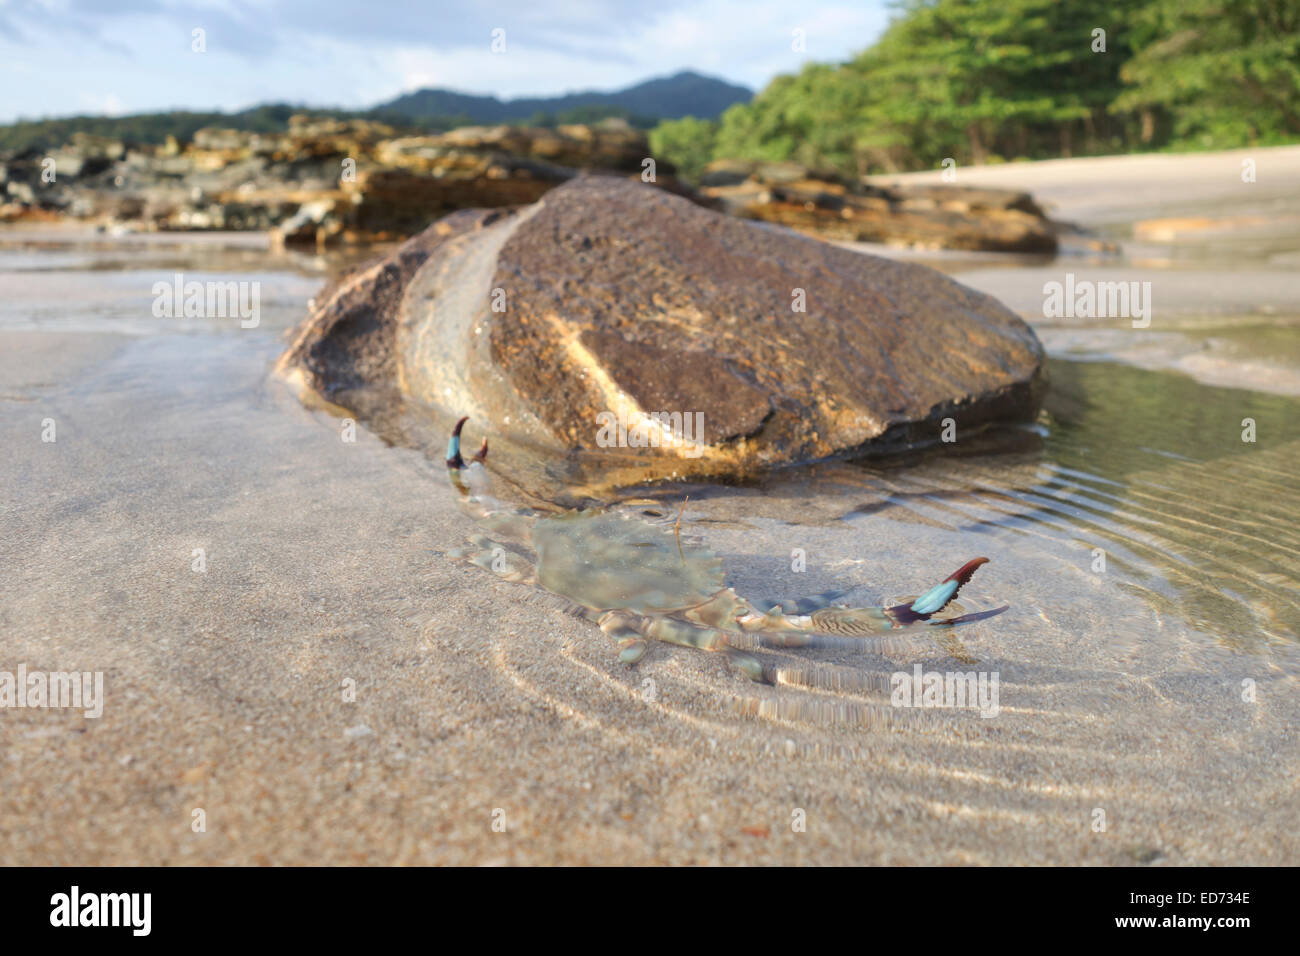 Rock Crabe Crabe épineux, Thalamita crenata, habituellement dans les eaux envasés, Koh, Ko Lanta, Thaïlande. Banque D'Images